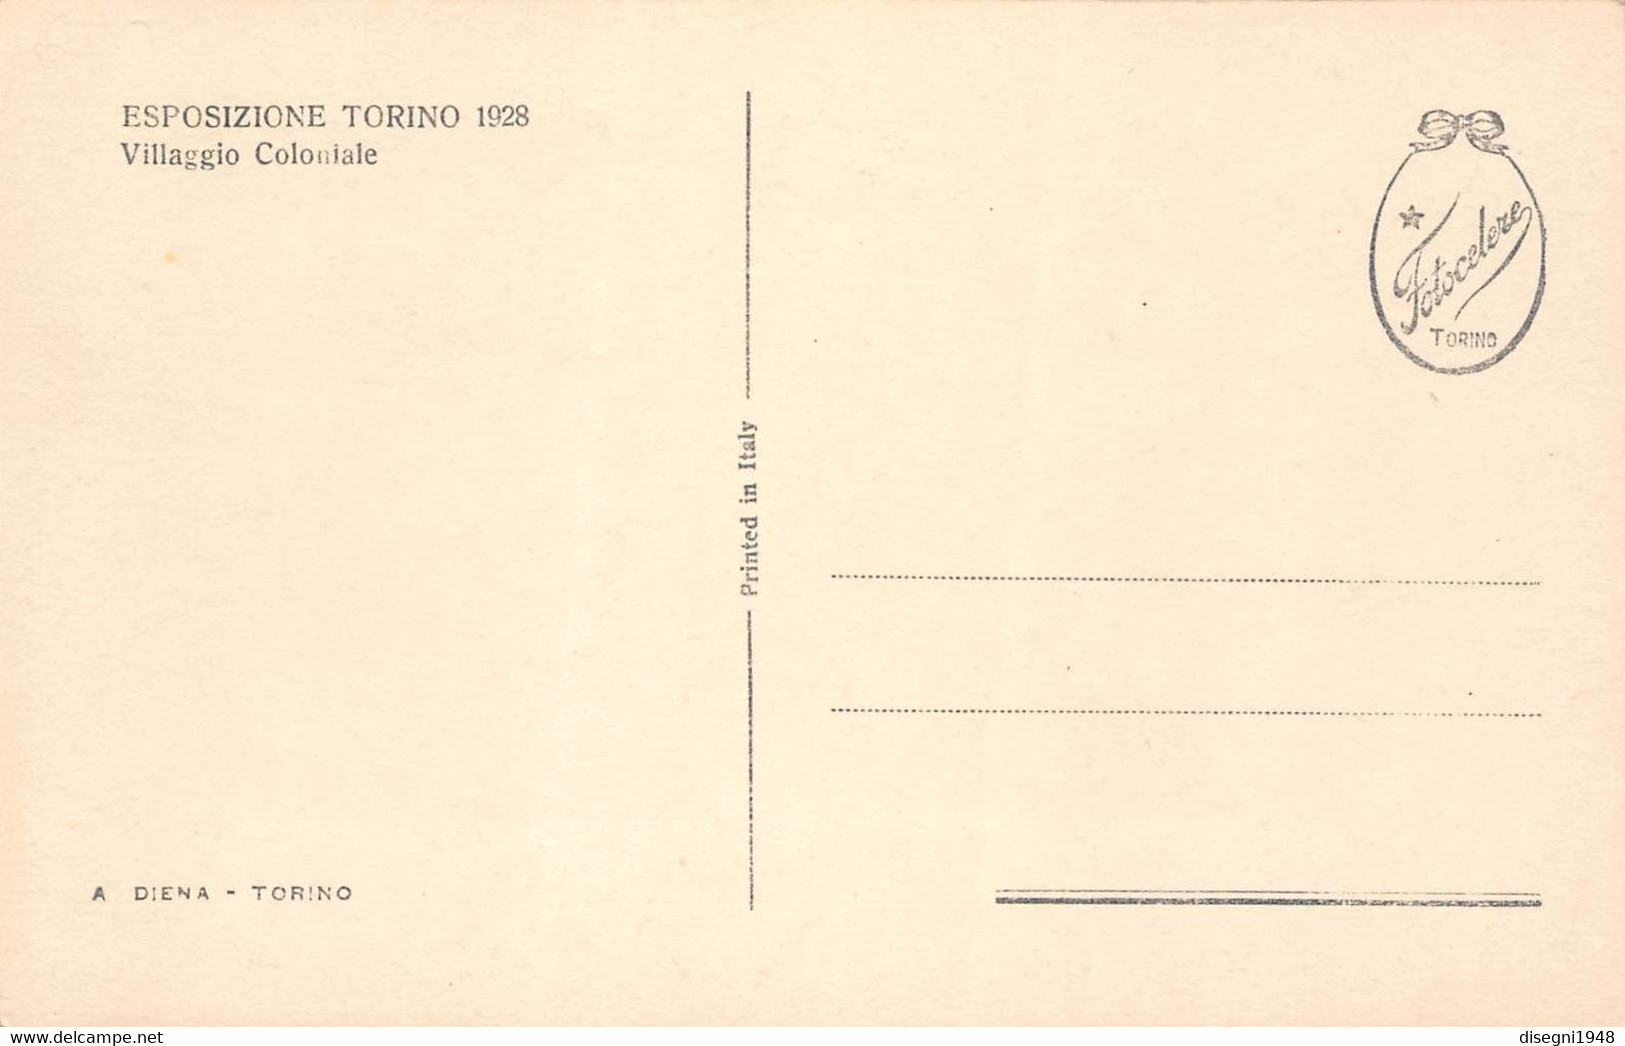 09887 "ESPOSIZIONE TORINO 1928 - VILLAGGIO COLONIALE" ARCHITETT. DEL '900. ANIMATA.CART. ORIG. NON SPED. - Expositions